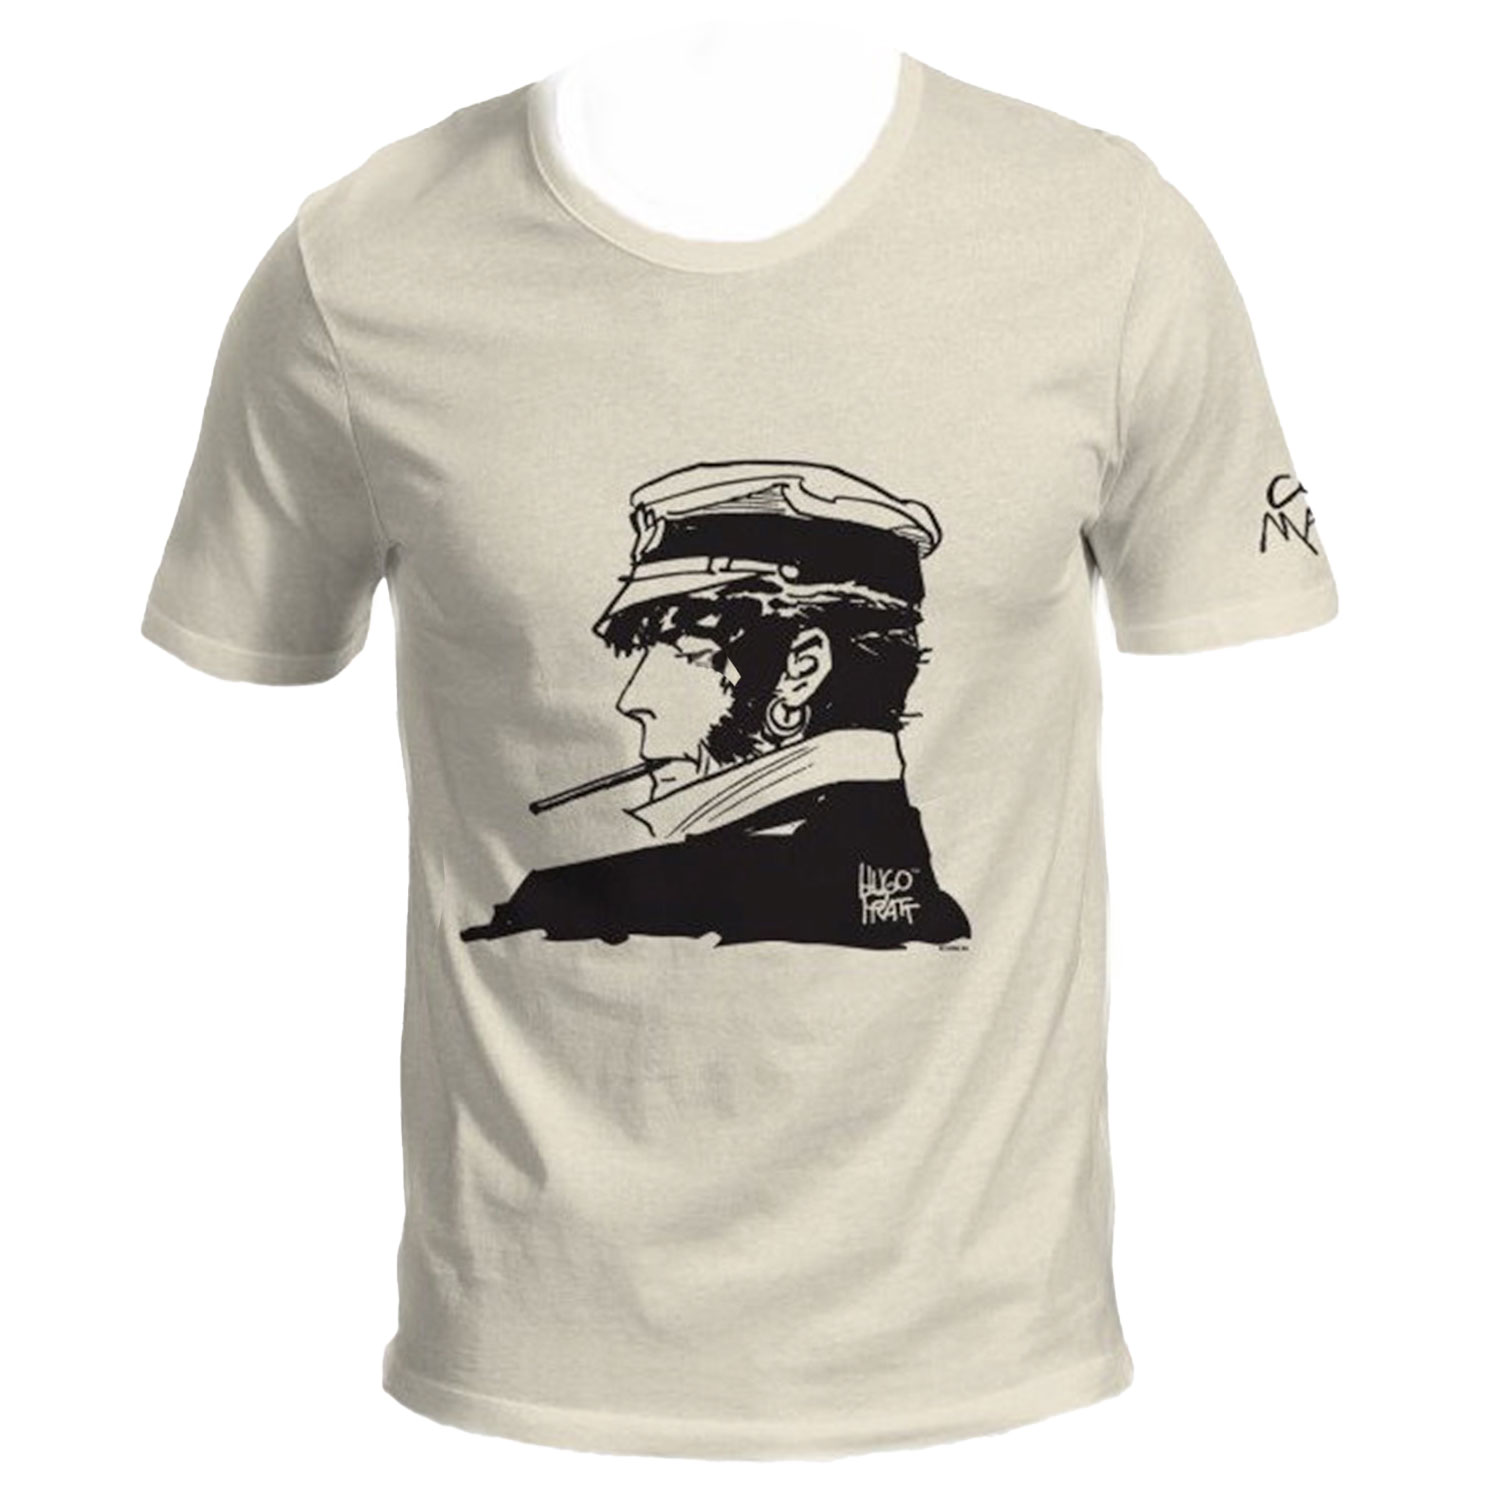 Hugo Pratt T-shirt : Corto Maltese , Cigarette - Ecru - Size XL